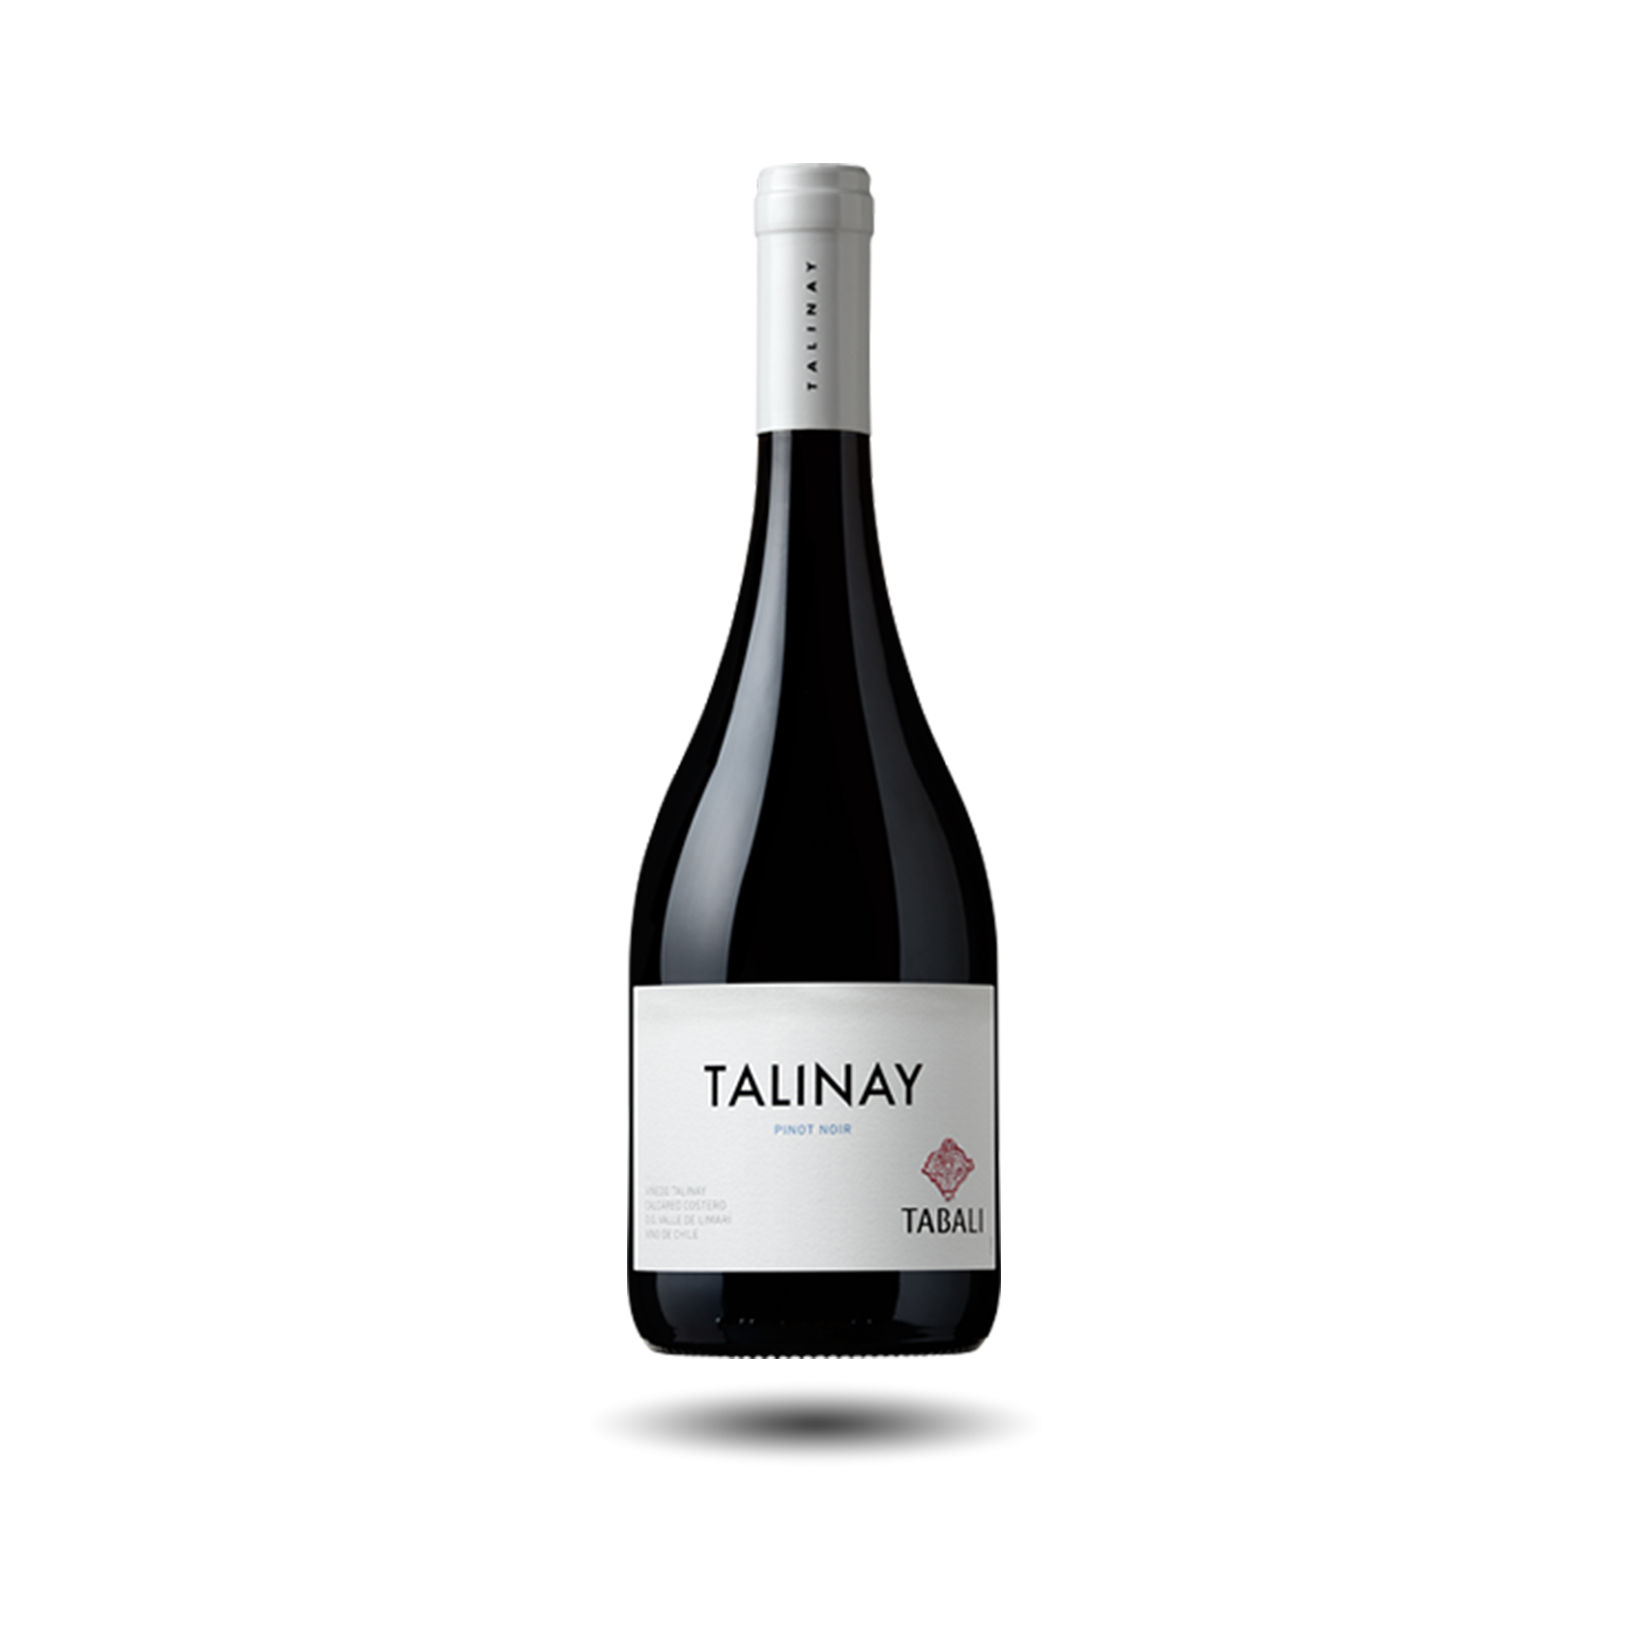 Tabali - Talinay, Pinot Noir, 2019